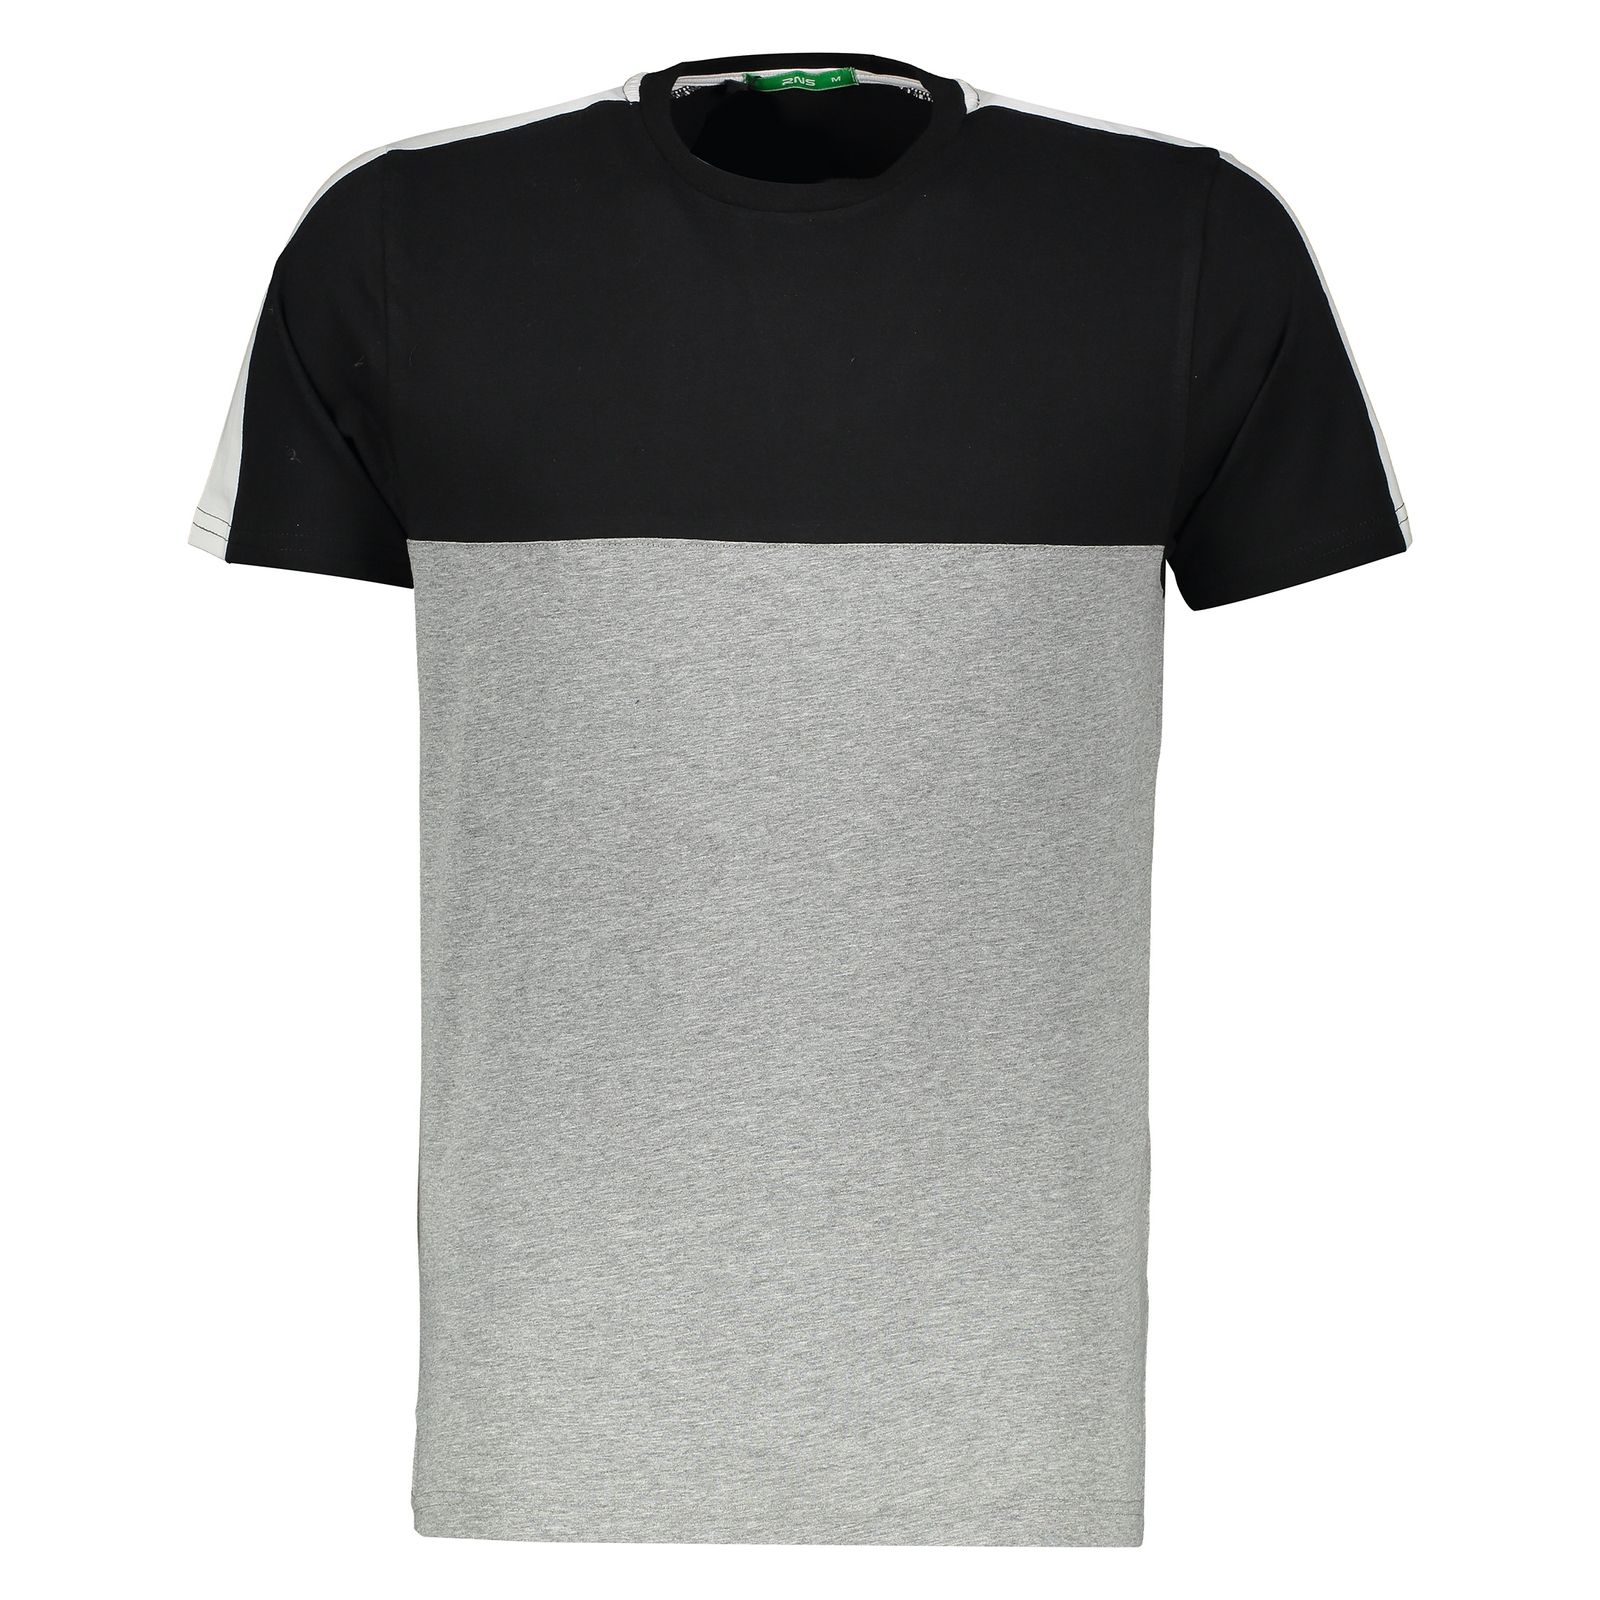 تی شرت مردانه آر ان اس مدل 1131109-99 - مشکی - 1